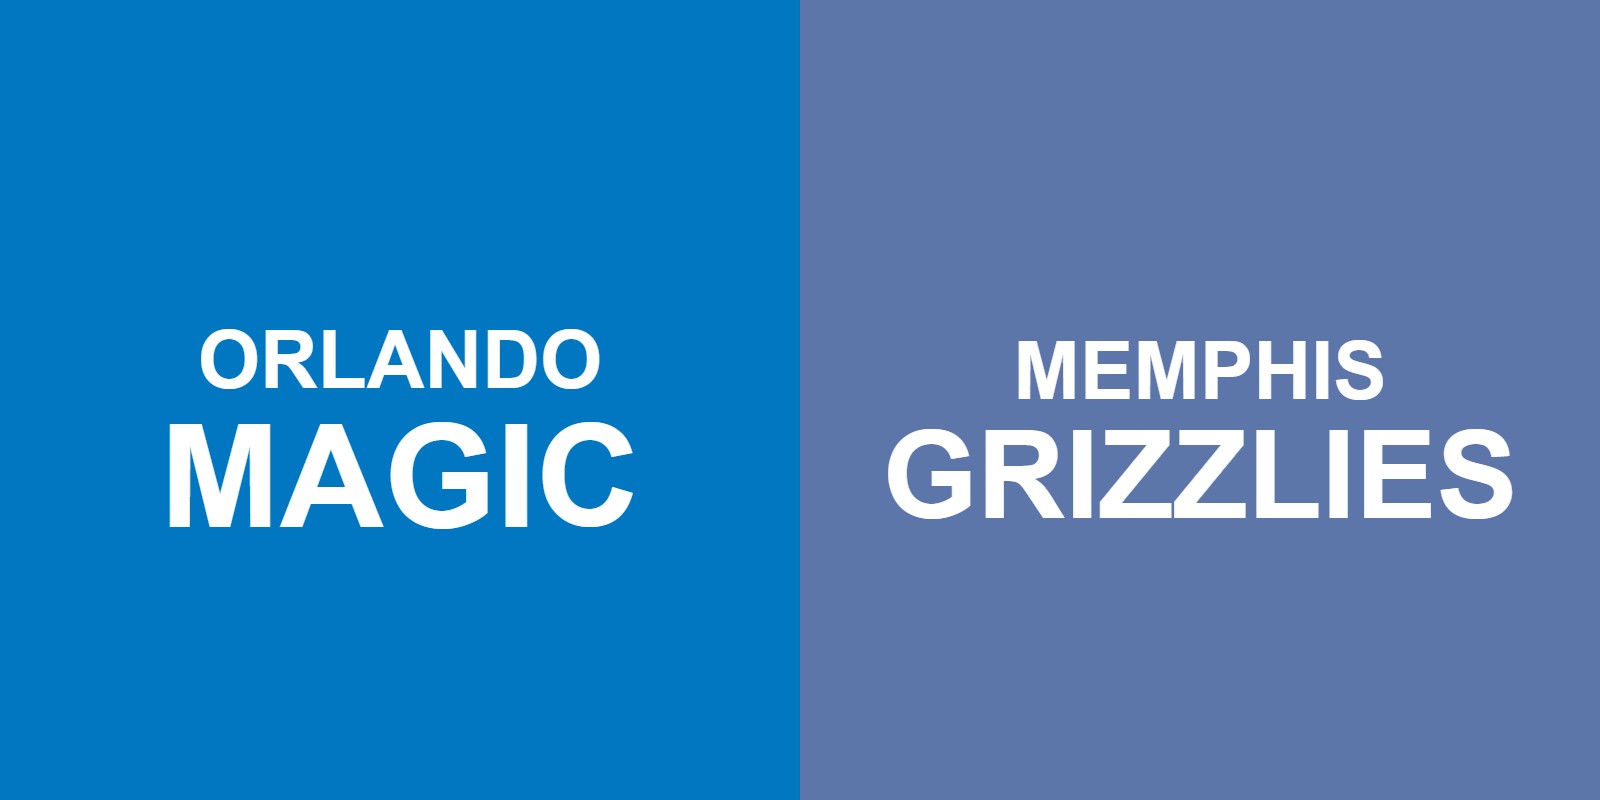 Magic vs Grizzlies